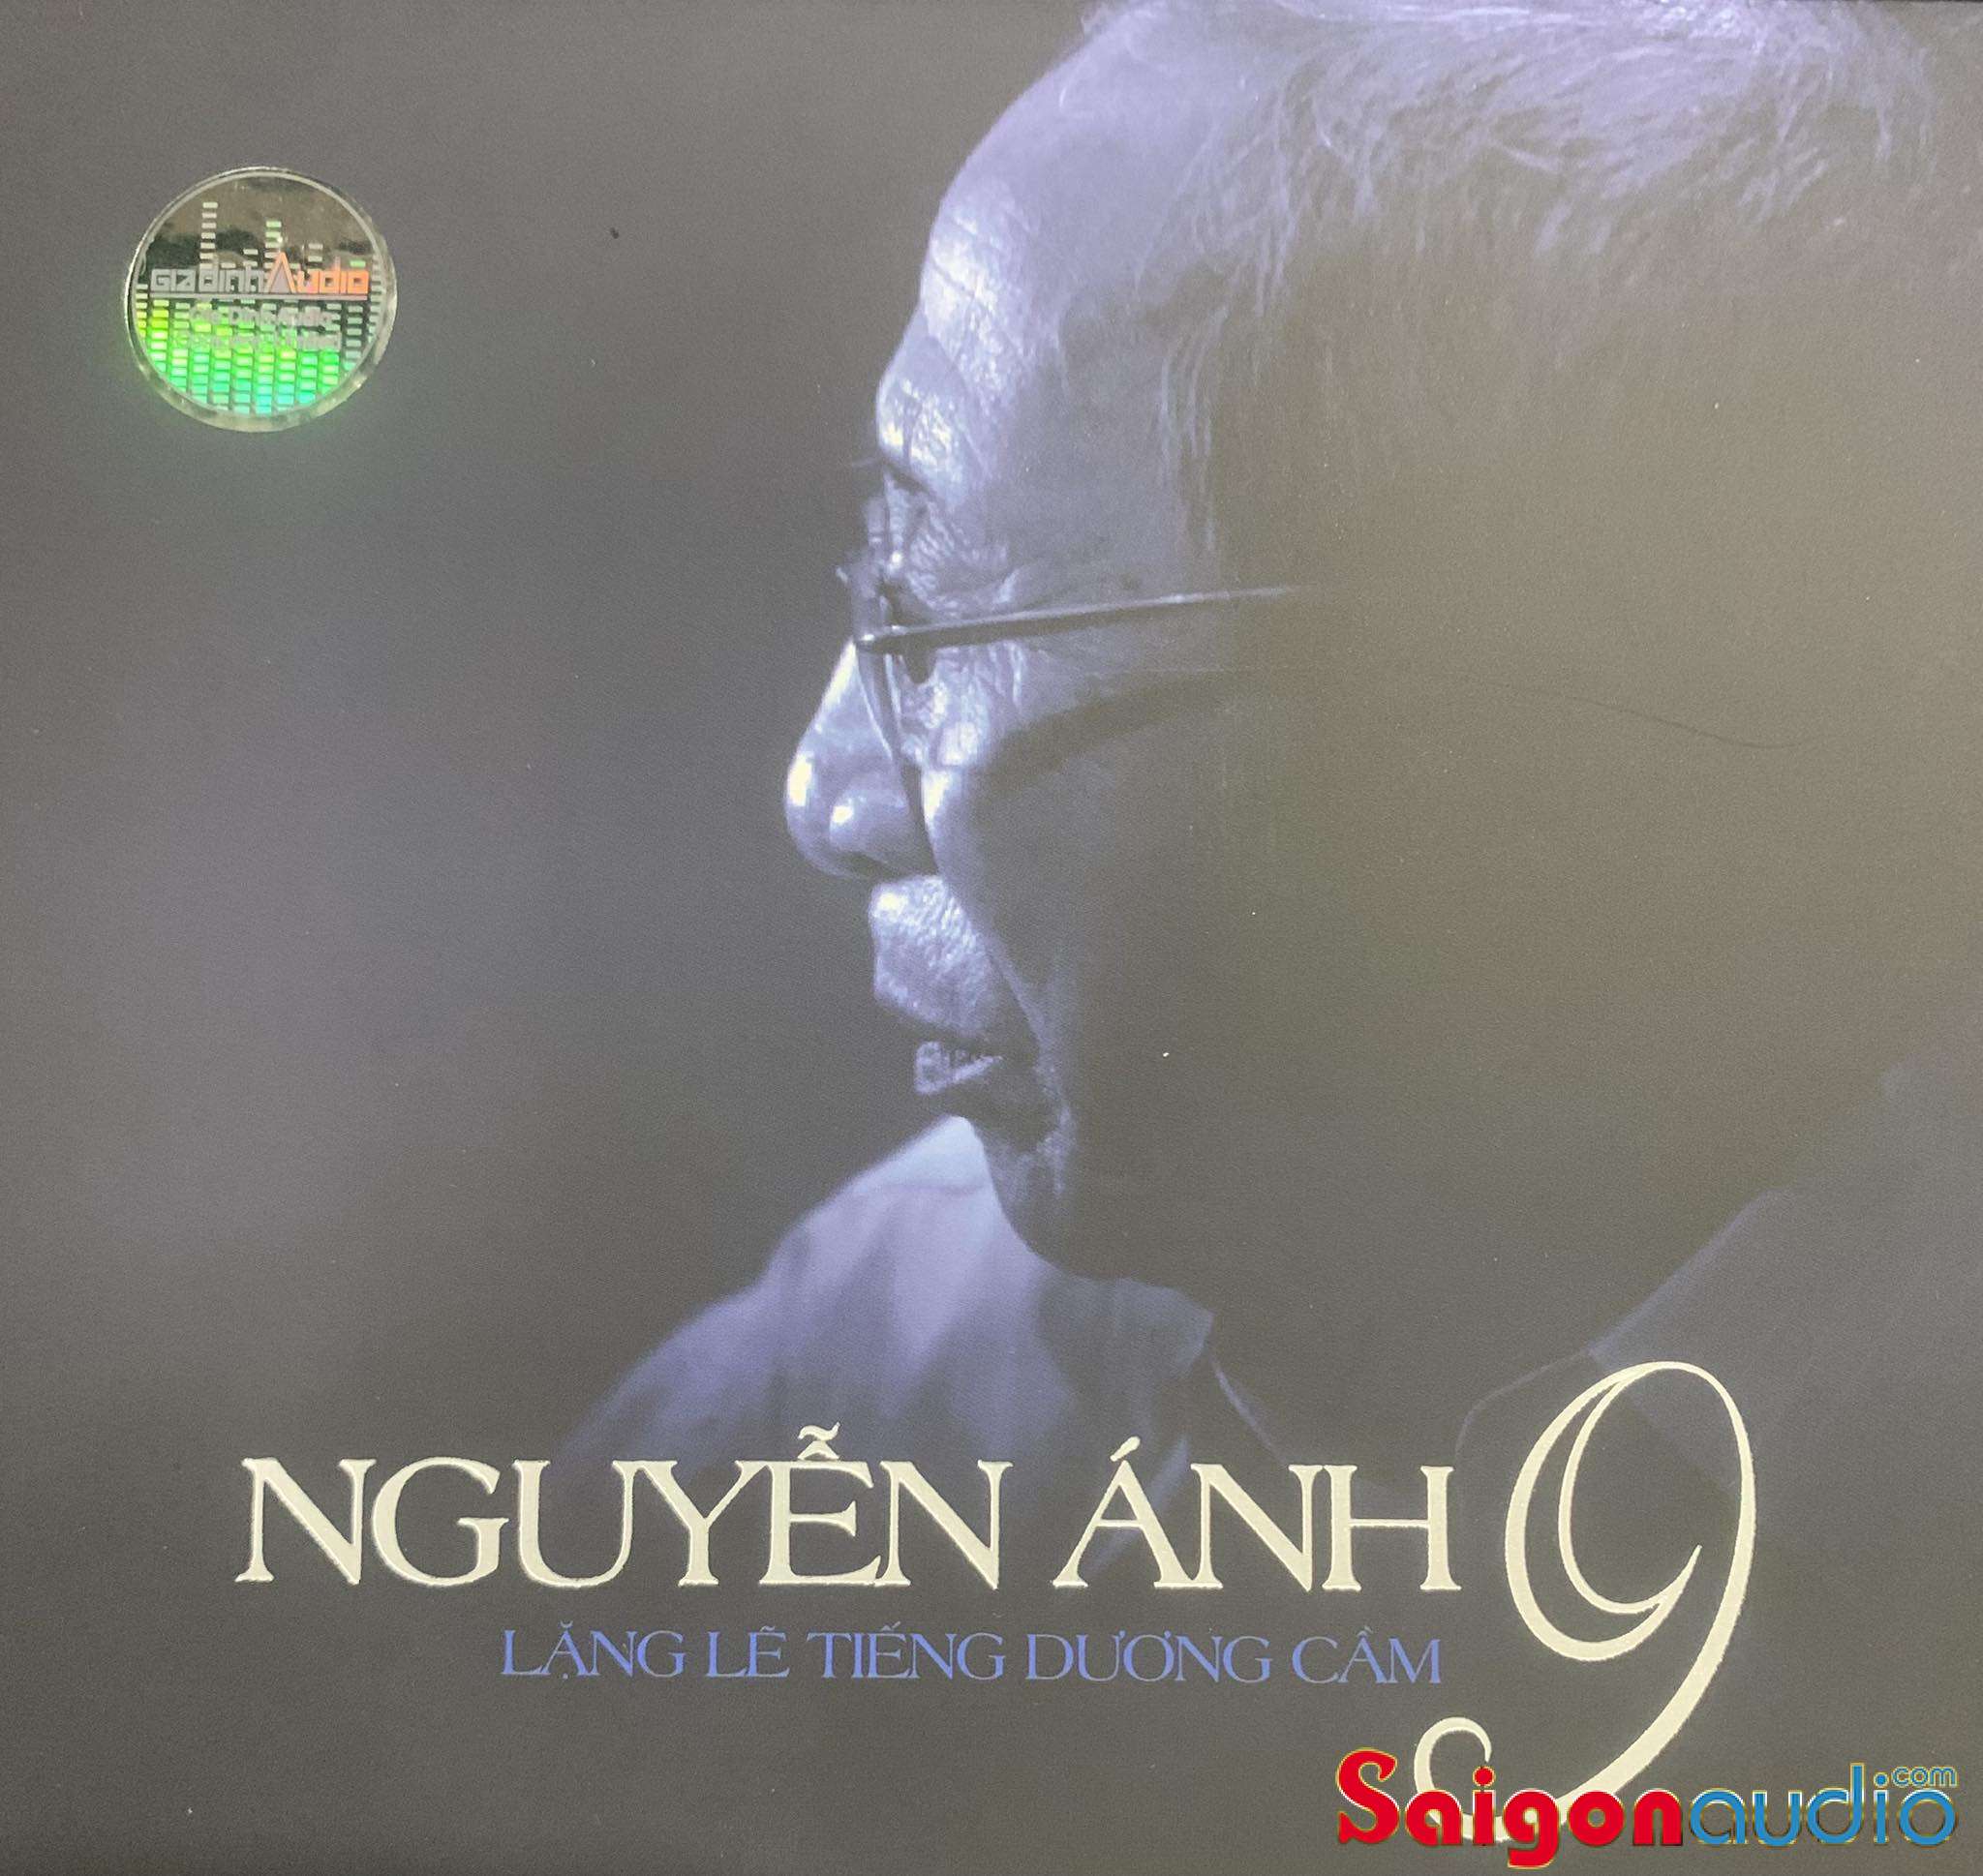 Đĩa CD nhạc gốc Nguyễn Ánh 9 - Lặng Lẽ Tiếng Dương Cầm (Free ship nhanh khi mua 2 đĩa CD cùng hoặc khác loại)